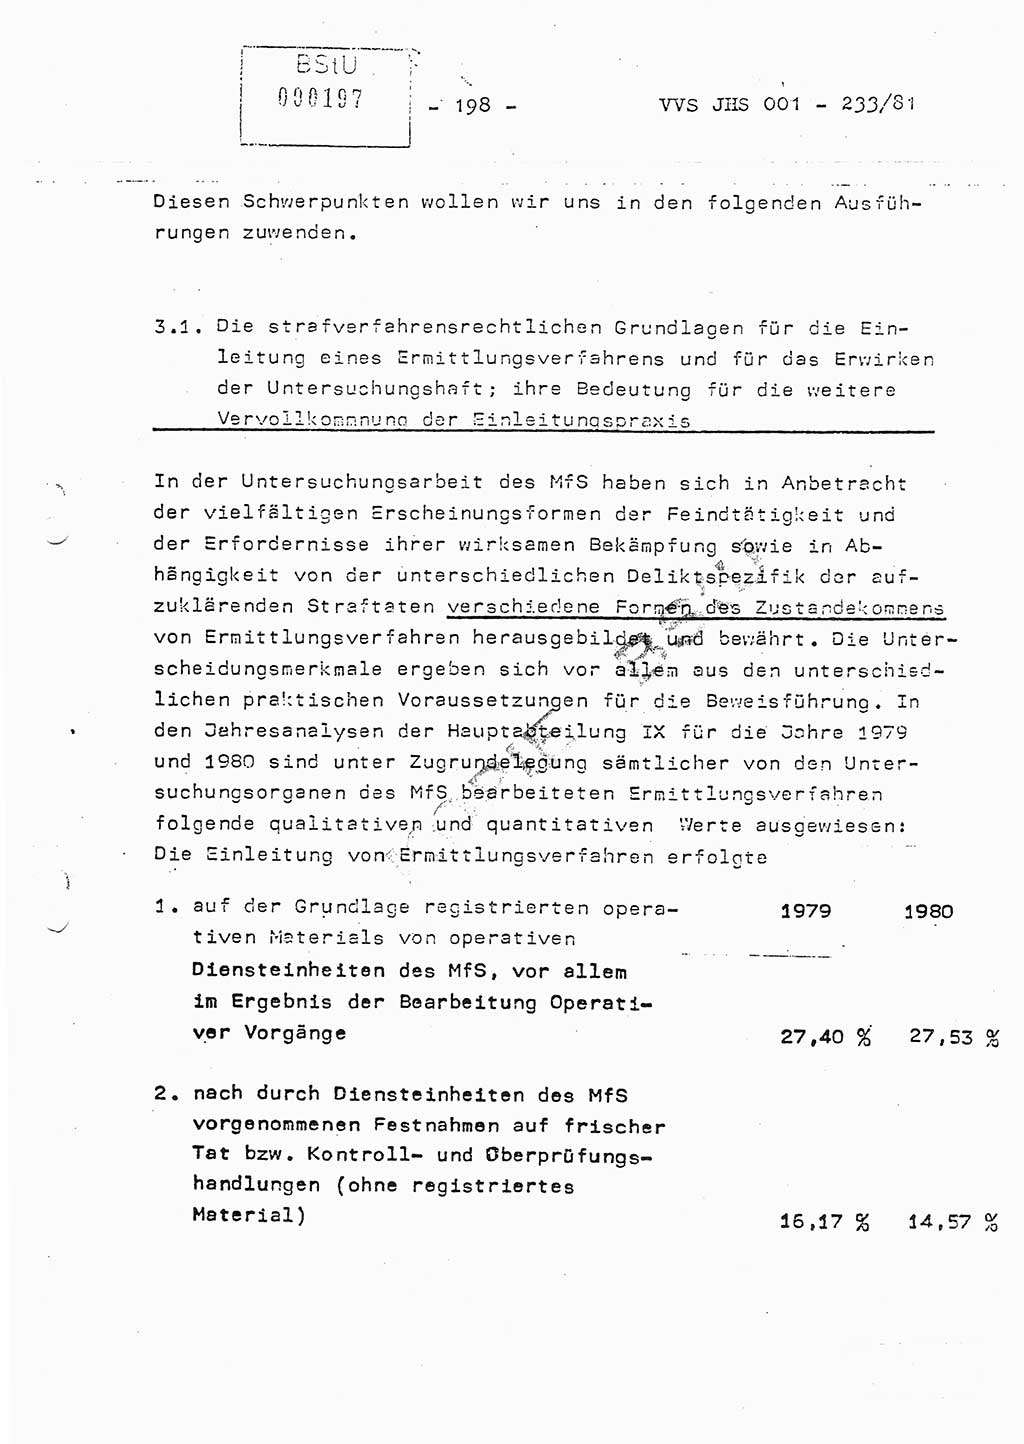 Dissertation Oberstleutnant Horst Zank (JHS), Oberstleutnant Dr. Karl-Heinz Knoblauch (JHS), Oberstleutnant Gustav-Adolf Kowalewski (HA Ⅸ), Oberstleutnant Wolfgang Plötner (HA Ⅸ), Ministerium für Staatssicherheit (MfS) [Deutsche Demokratische Republik (DDR)], Juristische Hochschule (JHS), Vertrauliche Verschlußsache (VVS) o001-233/81, Potsdam 1981, Blatt 198 (Diss. MfS DDR JHS VVS o001-233/81 1981, Bl. 198)